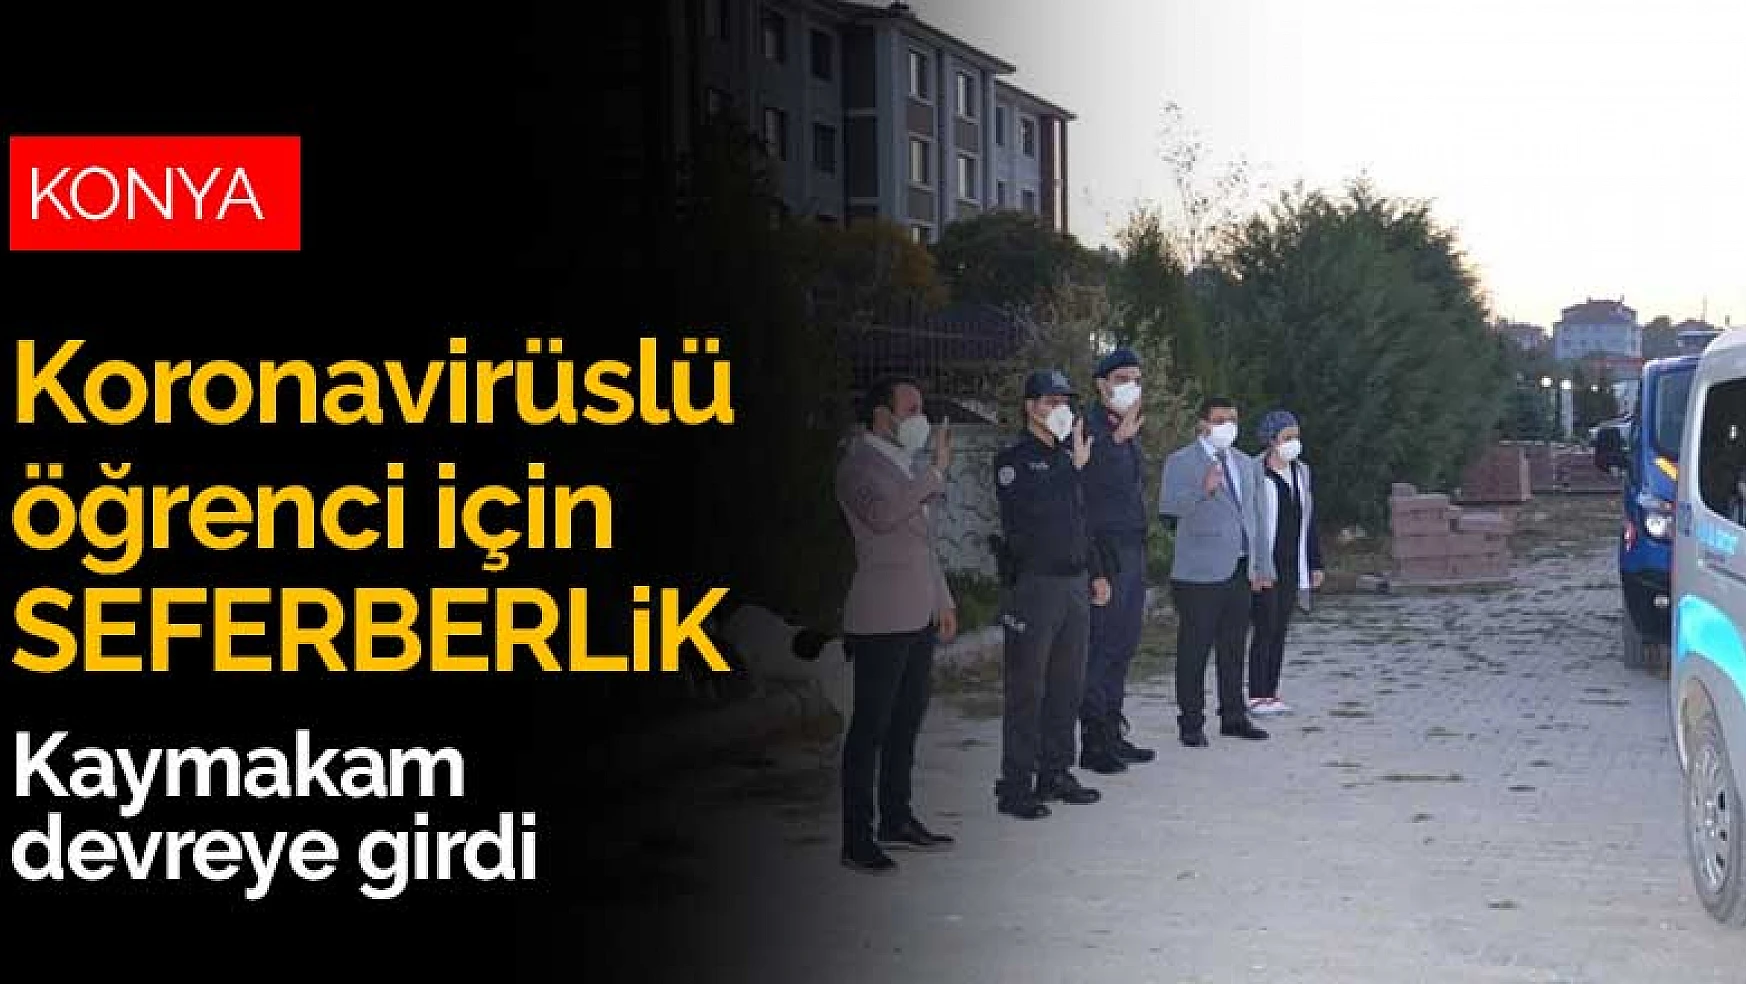 Konya'da koronavirüslü öğrenci için seferberlik! Tedbirler alındı, özel araç tahsis edildi